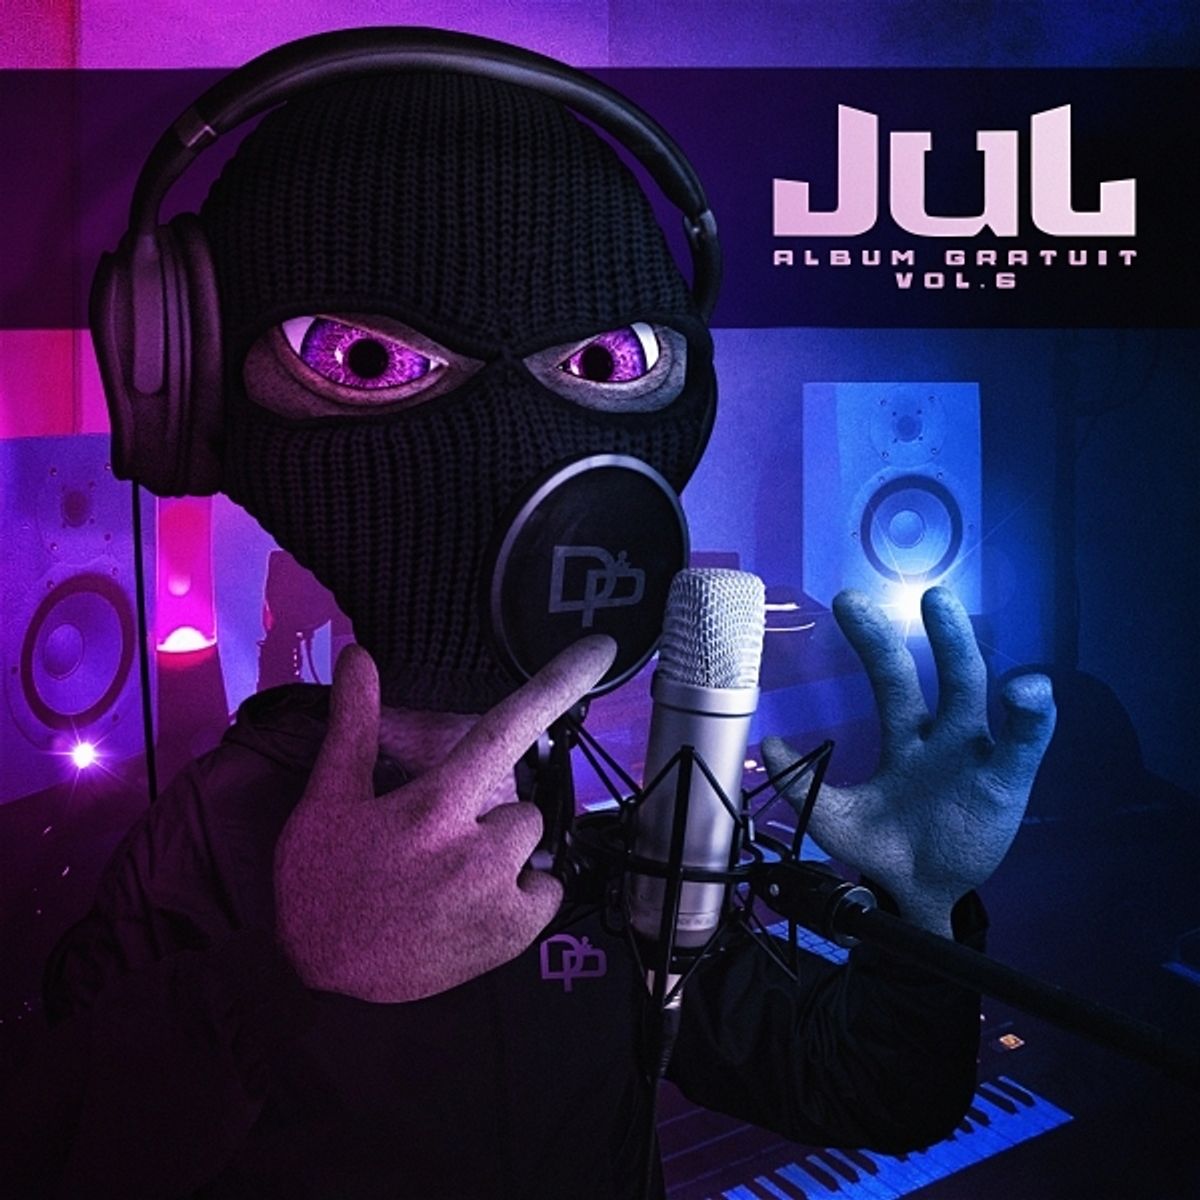 Jul - Album by Jul